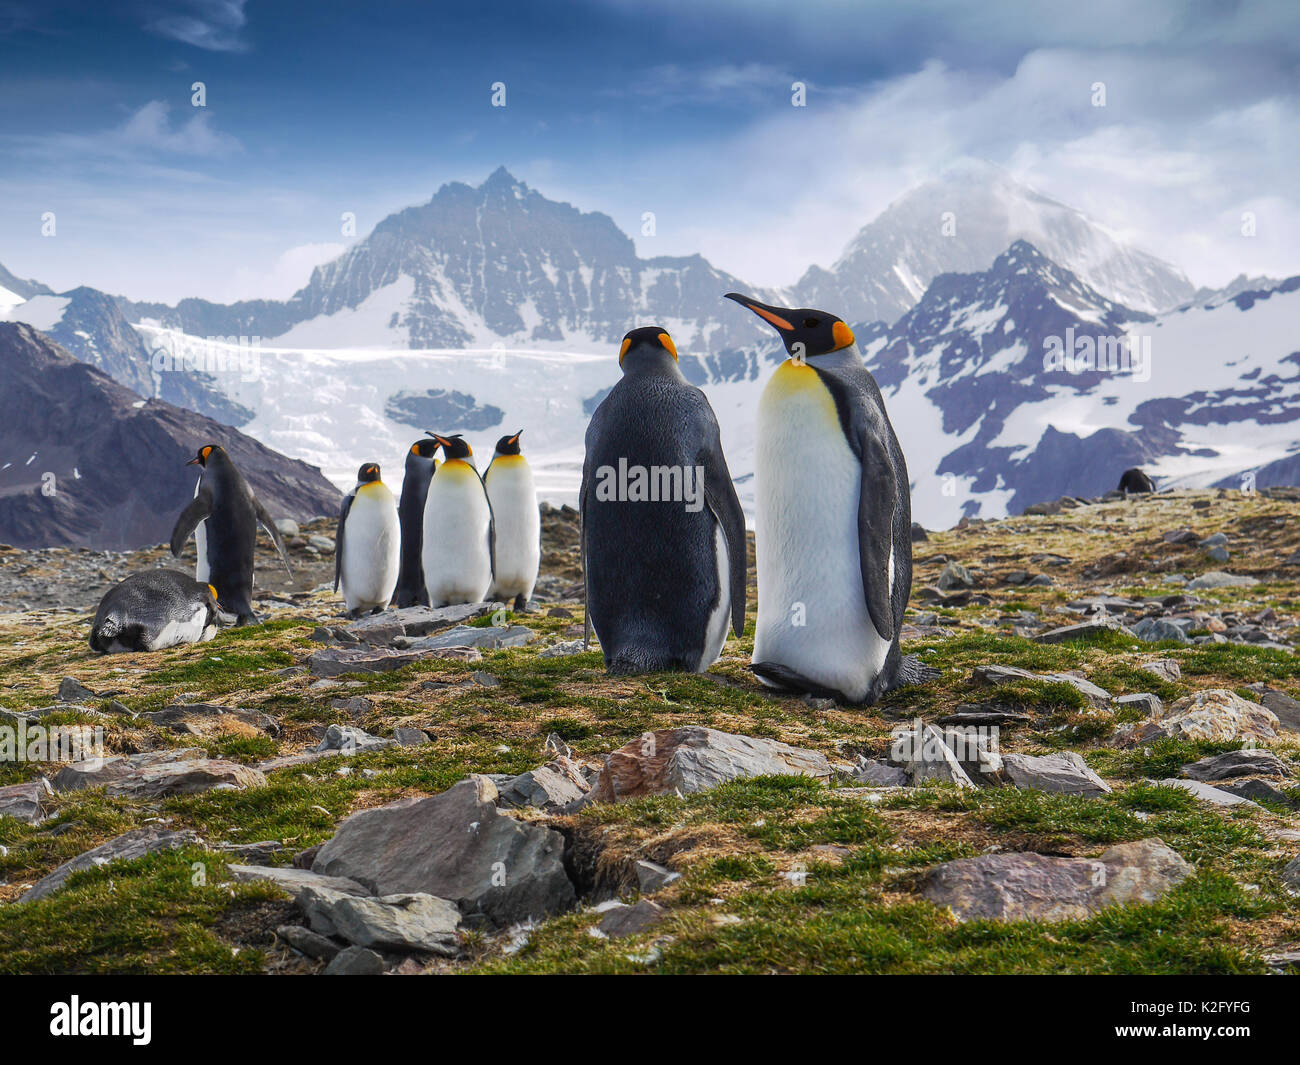 Ángulo de visión baja de un grupo de pingüinos rey de pie en frente de espectaculares montañas nevadas en la Isla Georgia del Sur en el Océano Atlántico Sur. Foto de stock